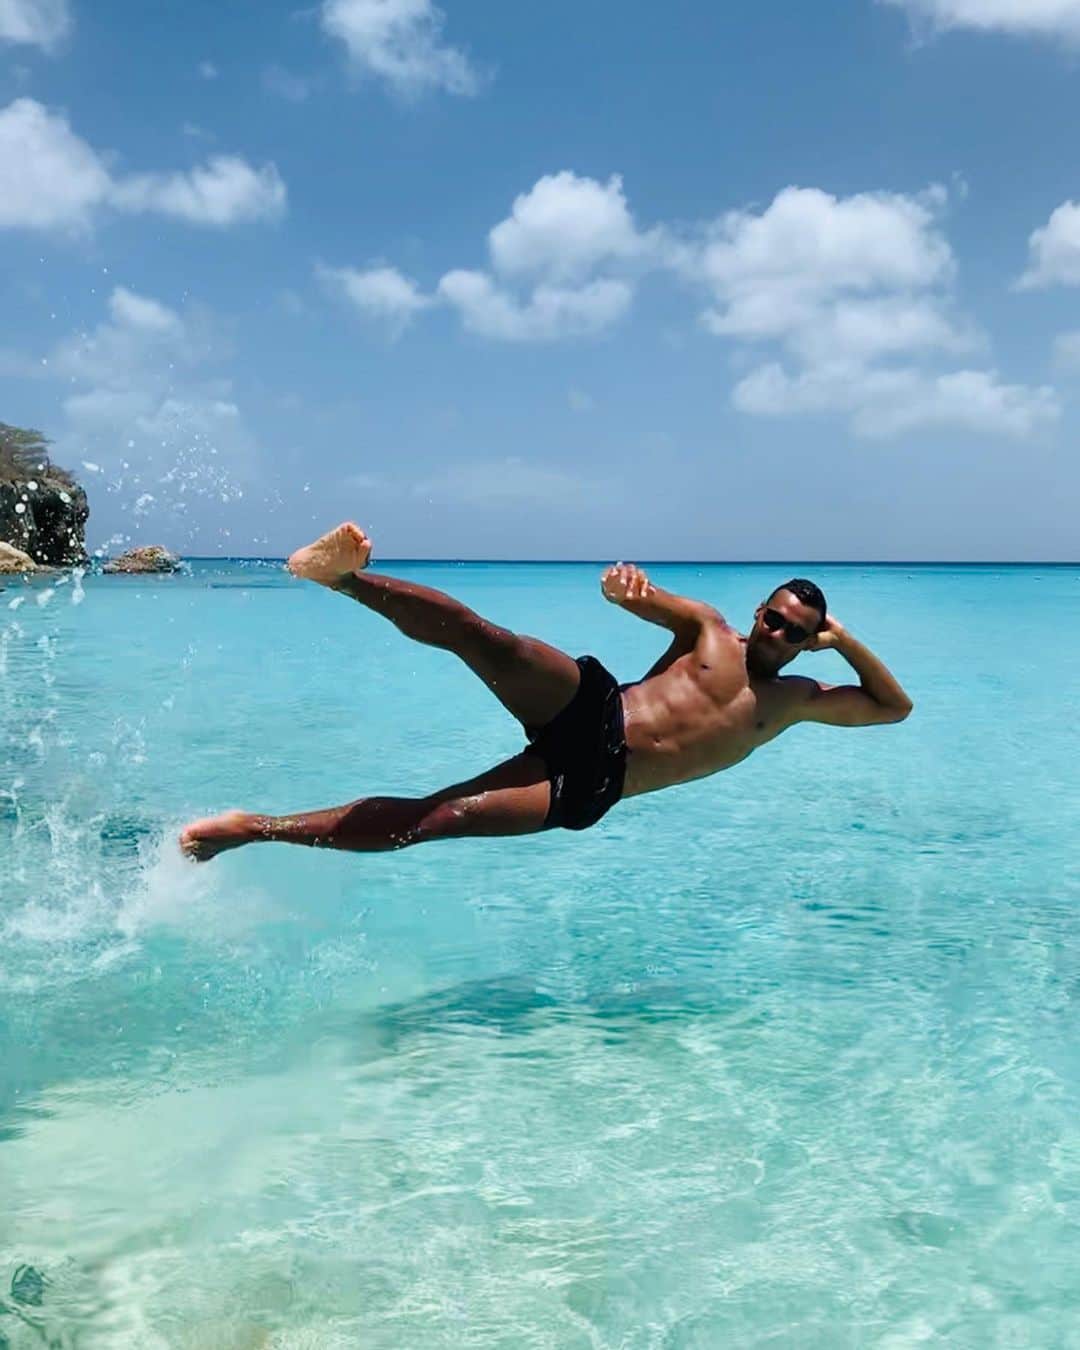 マーヴィン・マティプのインスタグラム：「Danke Karibikinseln, für die tollen und eindrucksvollen 3 Wochen.  Ihr seid so unterschiedlich wie wunderbar! 🇸🇽 🇩🇲 🇬🇵 🇱🇨 🇹🇹 🇨🇼 . .  1. Curaçao, Grote Knip: #hatersgonnahate  2. Sint Maarten, Maho Bay: #wartenaufeinFlugzeug 3. Guadeloupe, Plage de la Perle: #einStrandfüruns 4. St. Lucia, Ti Kaye Resort/Anse Cochon:  #odereinFruchtkonzentrat 5. St. Lucia, Soufrière: #TitanicfürArme 6. St. Lucia, Gros Piton: #gehtwandernhabensiegesagt #eswirdSpaßmachenhabensiegesagt  7. Trinidad & Tobago, Maracas Lookout: #anotherroadtrip 8. Trinidad & Tobago, Avocat Waterfall: #Missionfindthewaterfall #failed 9. Curaçao, Willemstad: #TouriswiesieimBuchestehen  10. Klein Curaçao, Lighthouse: #oheinleuchturm . .  #nofilterneeded #wurdenaberbenutzt  #matipsinderkaribik #islandhopping」